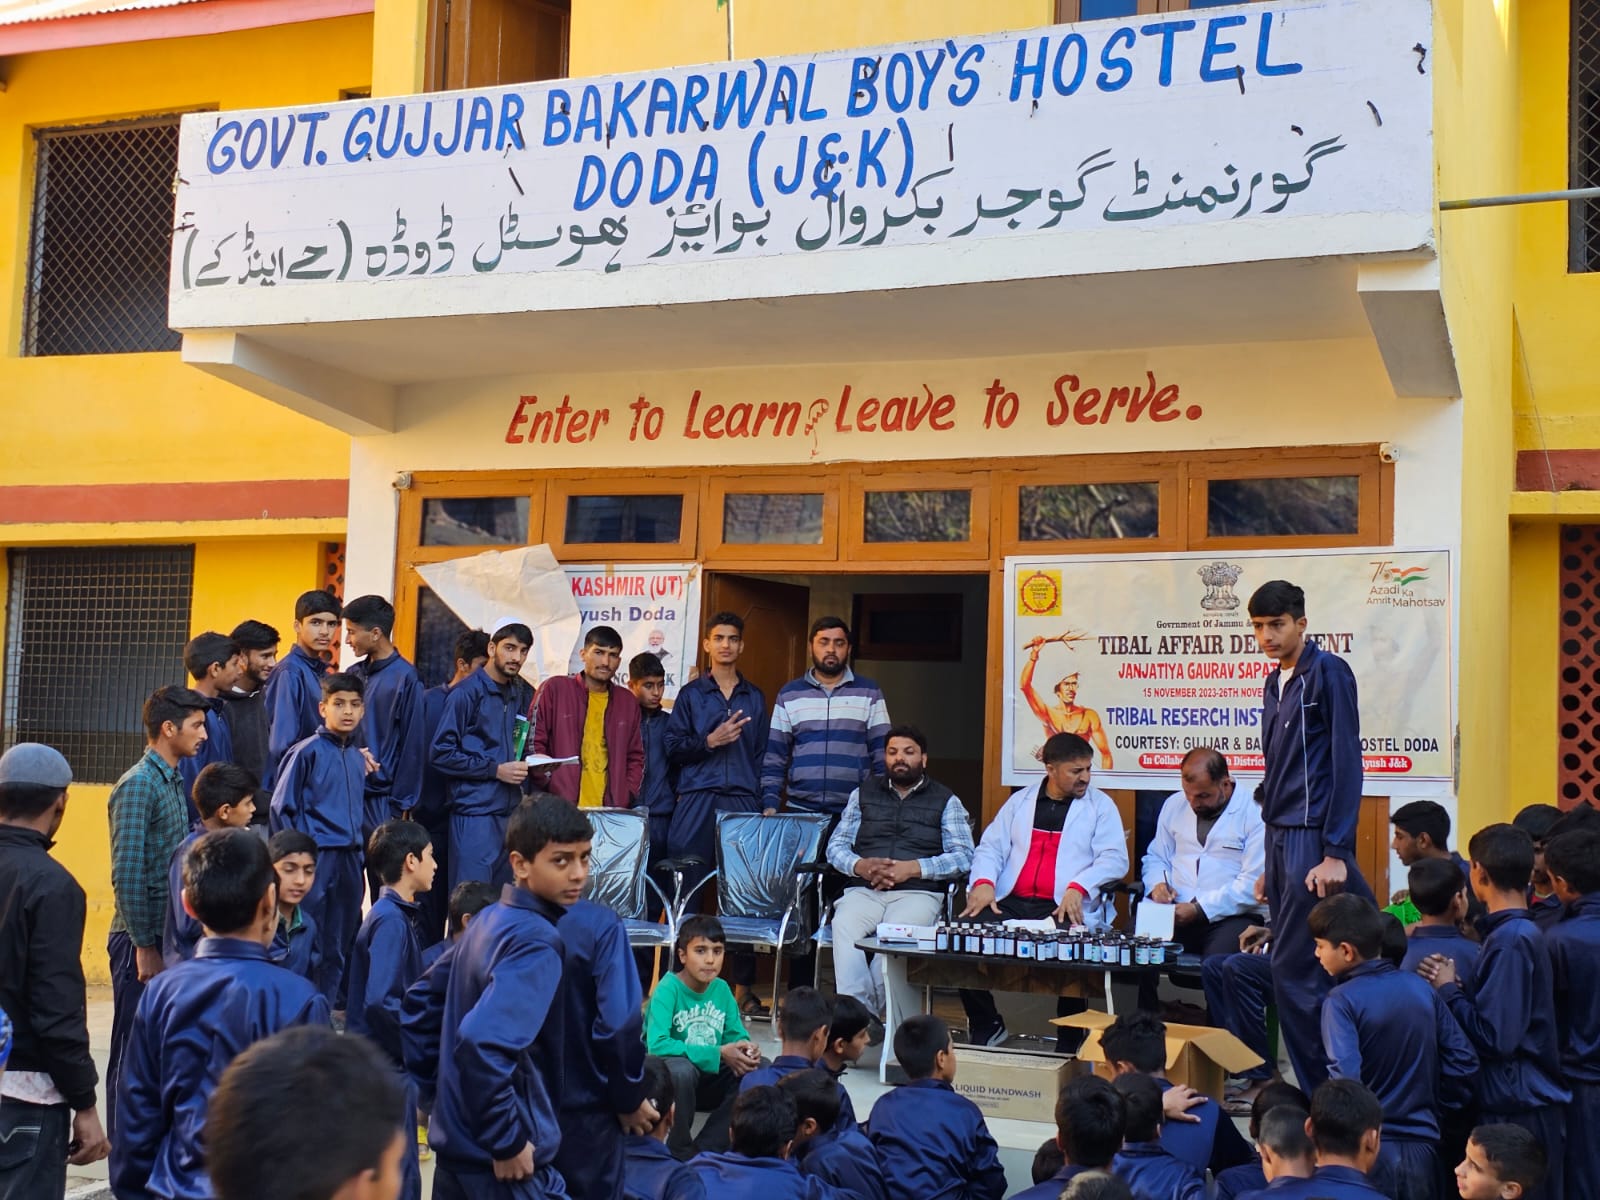 Organizing of Health Camp at Gujjar and Bakarwal Hostel Doda and observed Janjatiya Gaurav Saptah